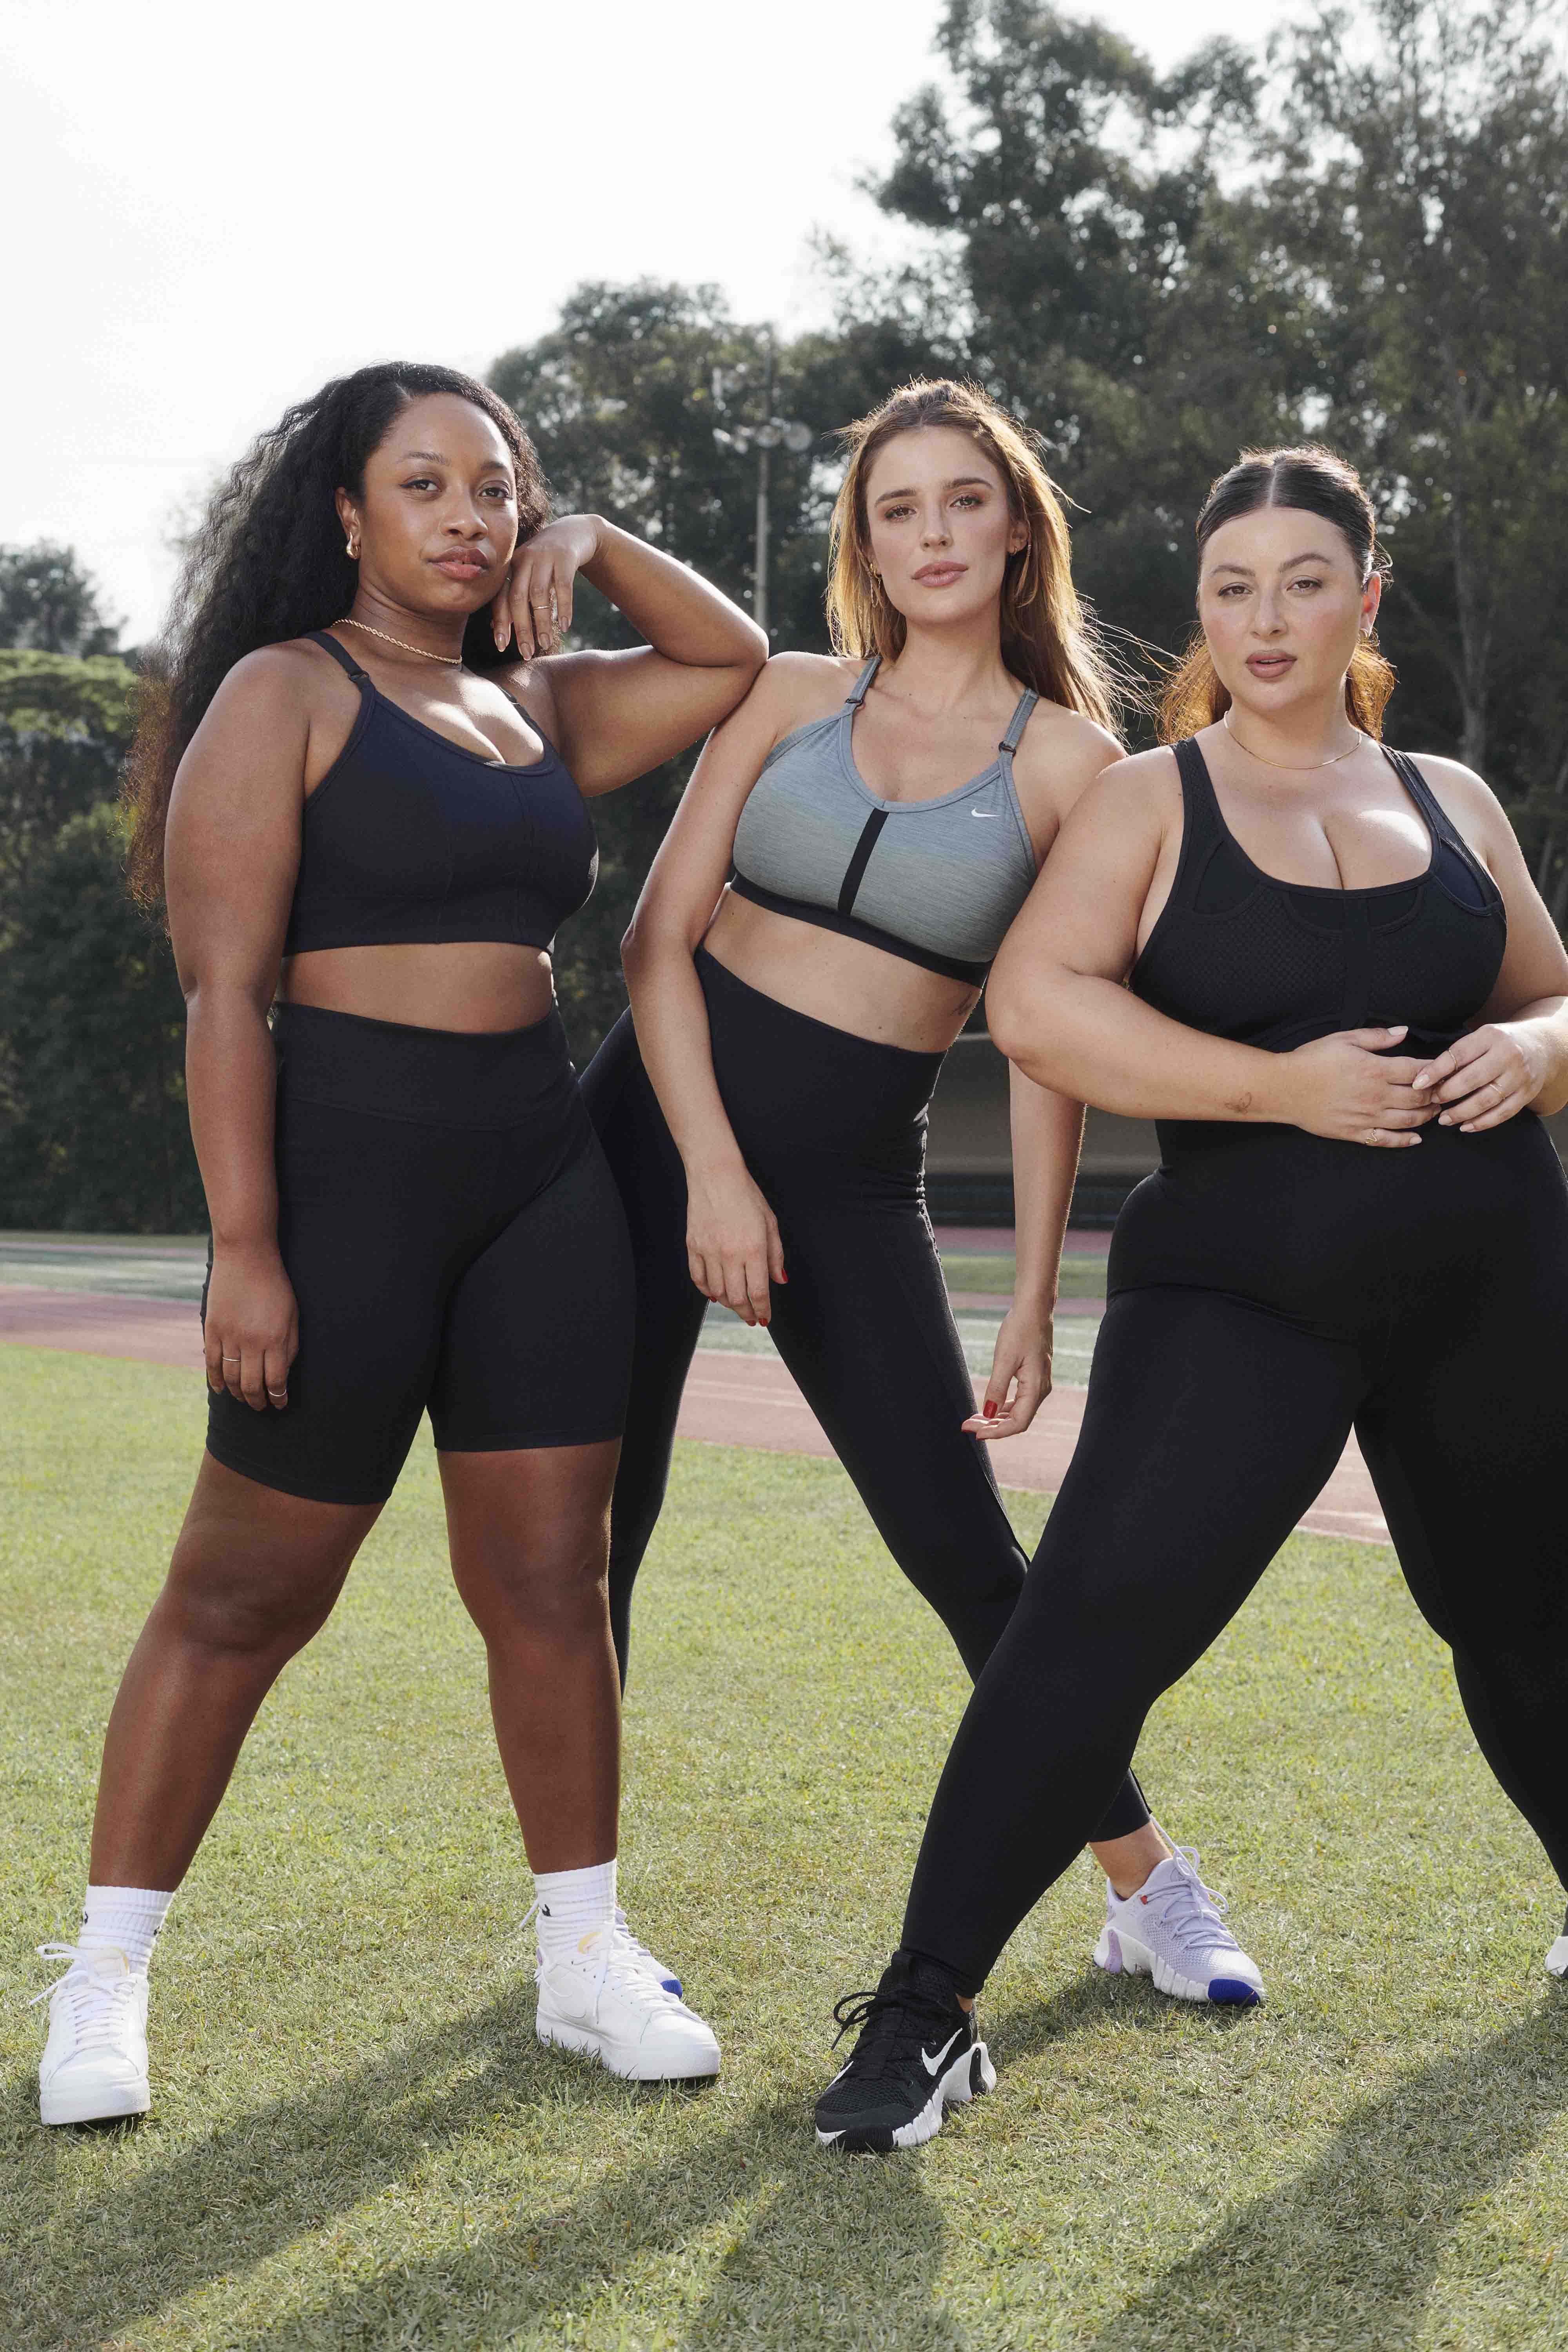 Nike lança hub de conteúdo par incentivar a amoda inclusiva